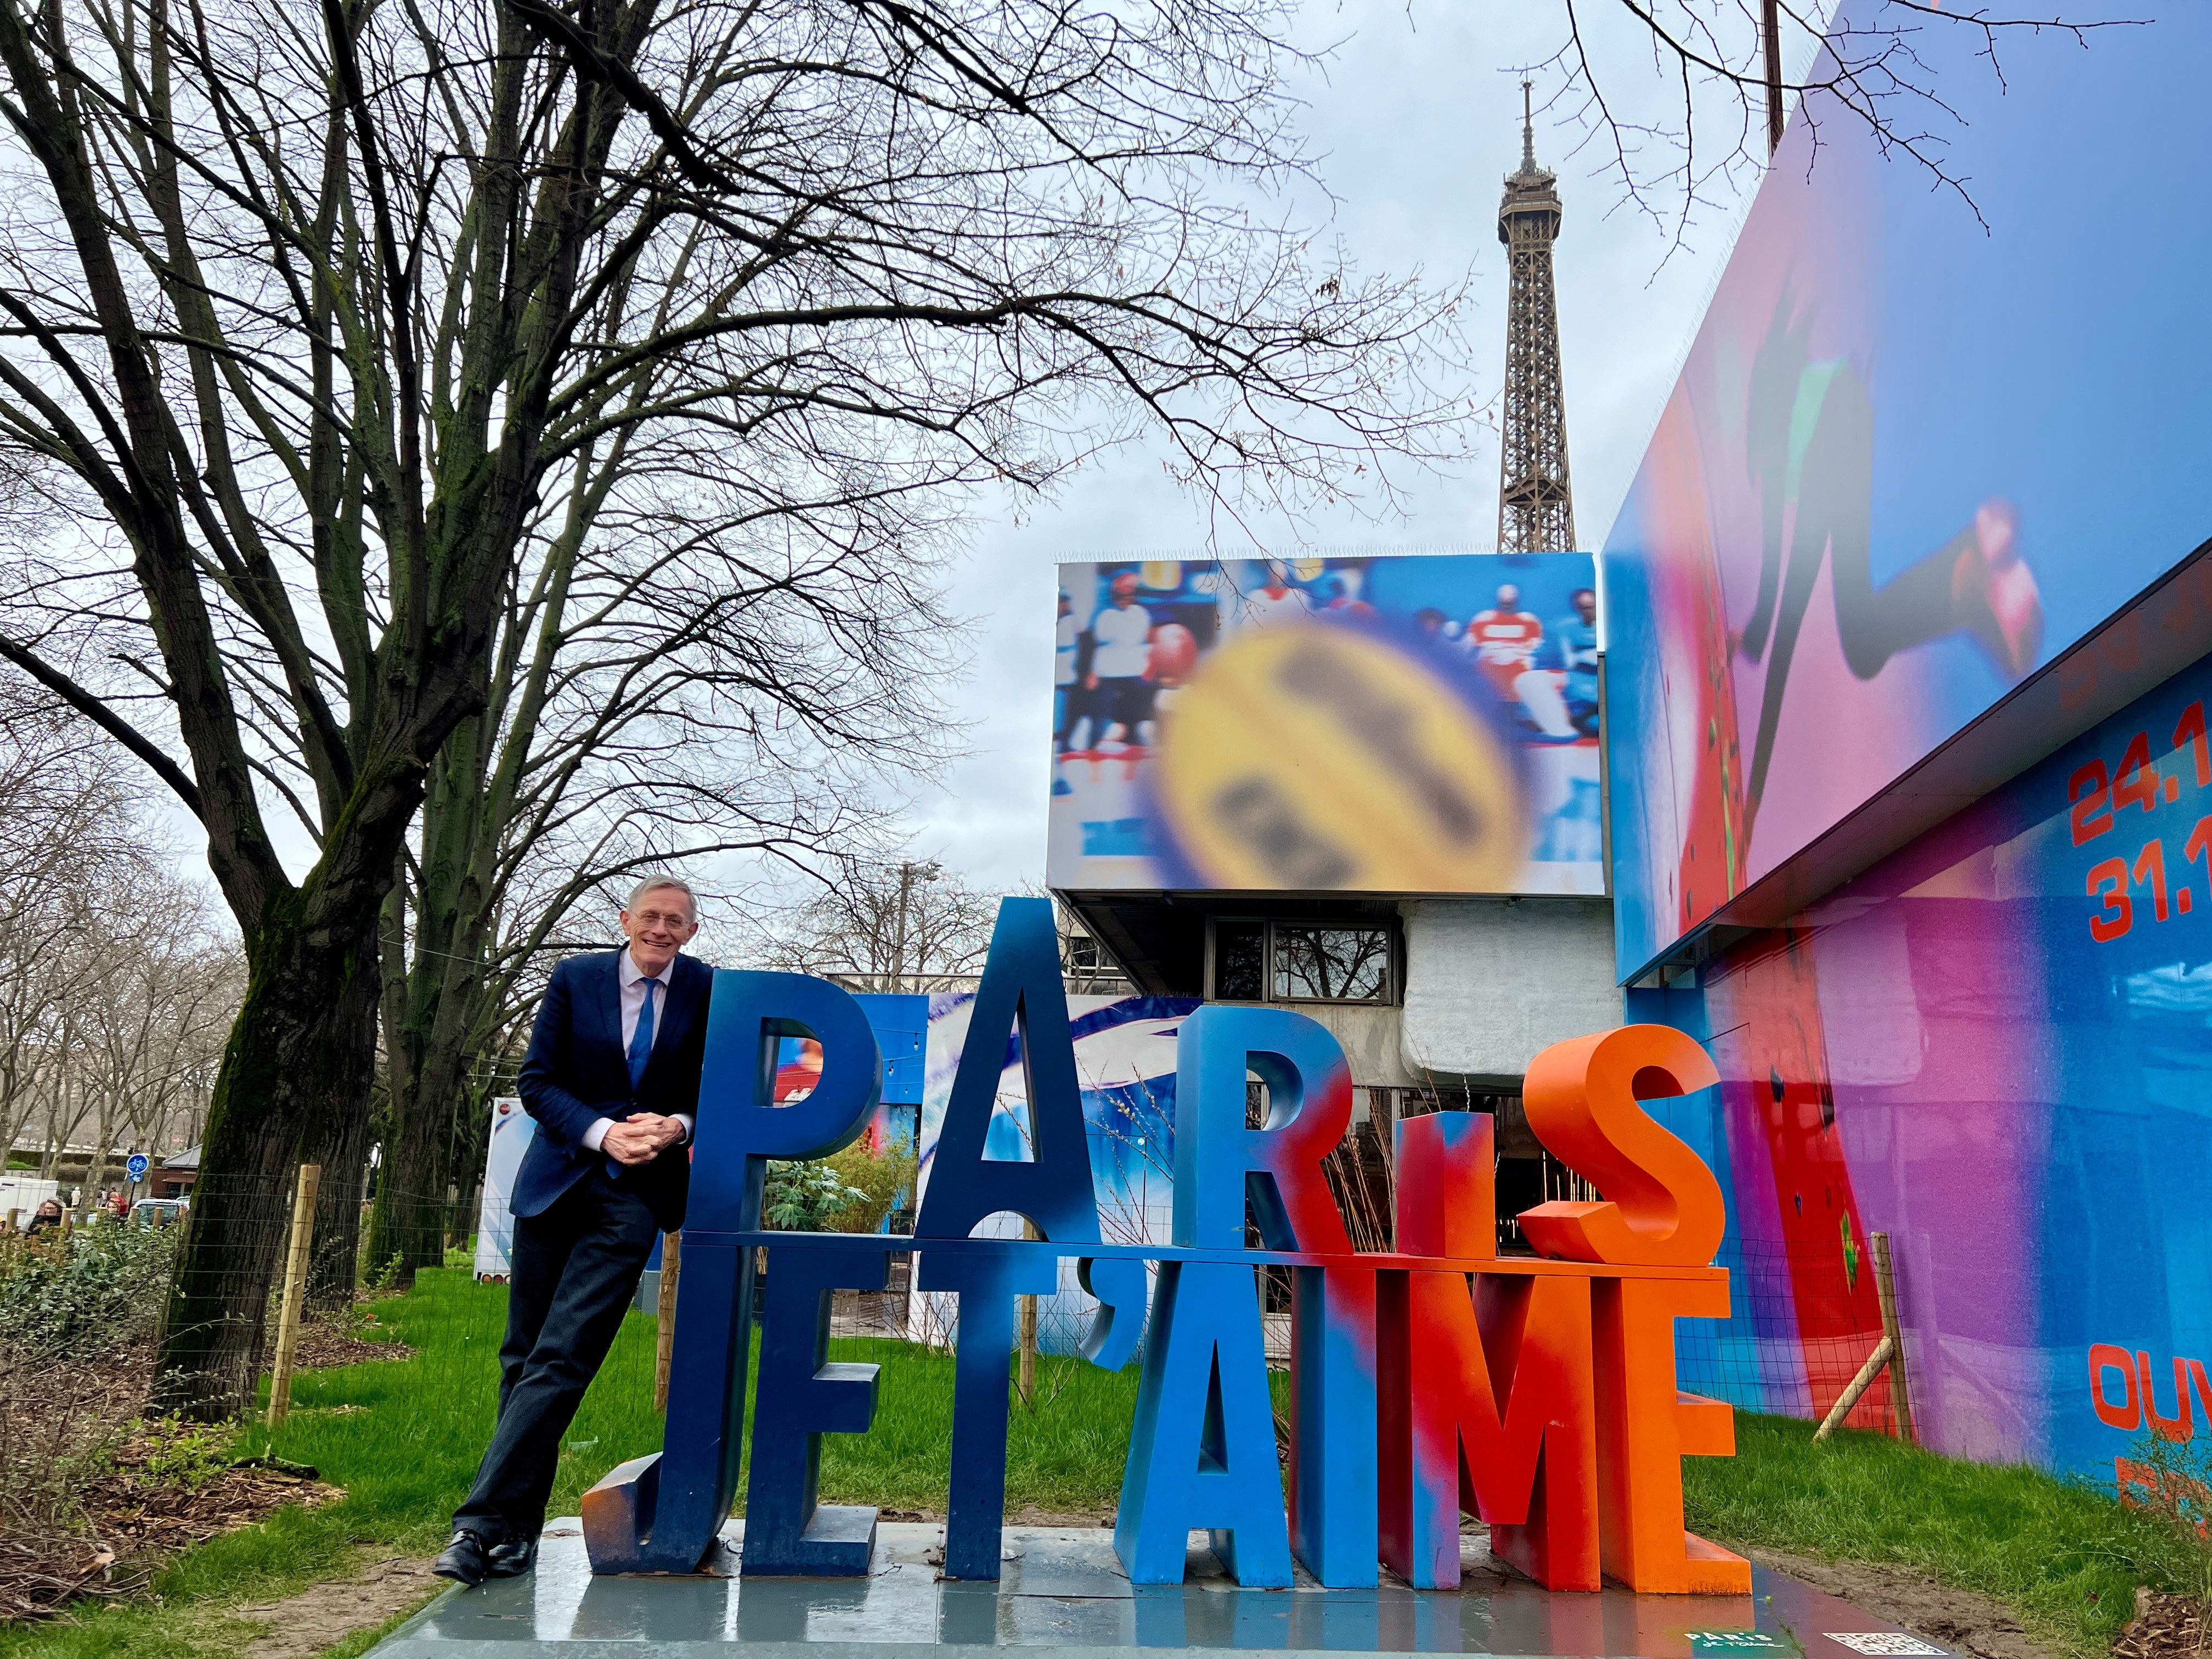 Jeux sans frontieres: Simon Calder at Spot 24, a cultural venue for the Paris Olympics 2024